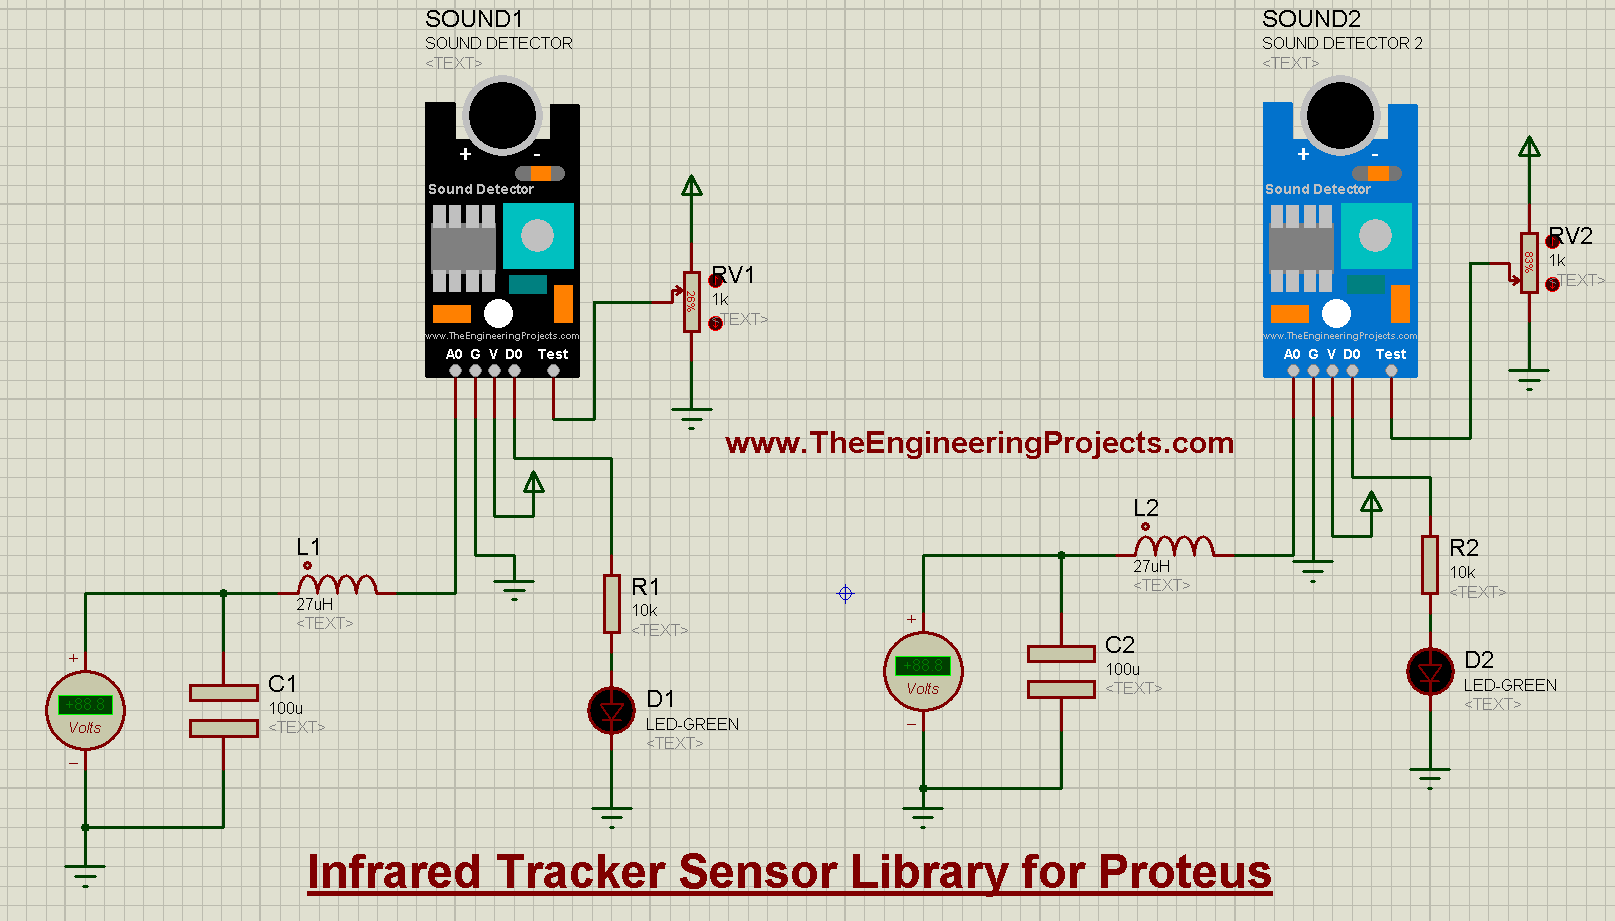 Sound Detector Library for Proteus V2.0, Sound Detector Library for Proteus, Sound Detector in Proteus, Sound Detector Proteus, Sound Detector Proteus simulation